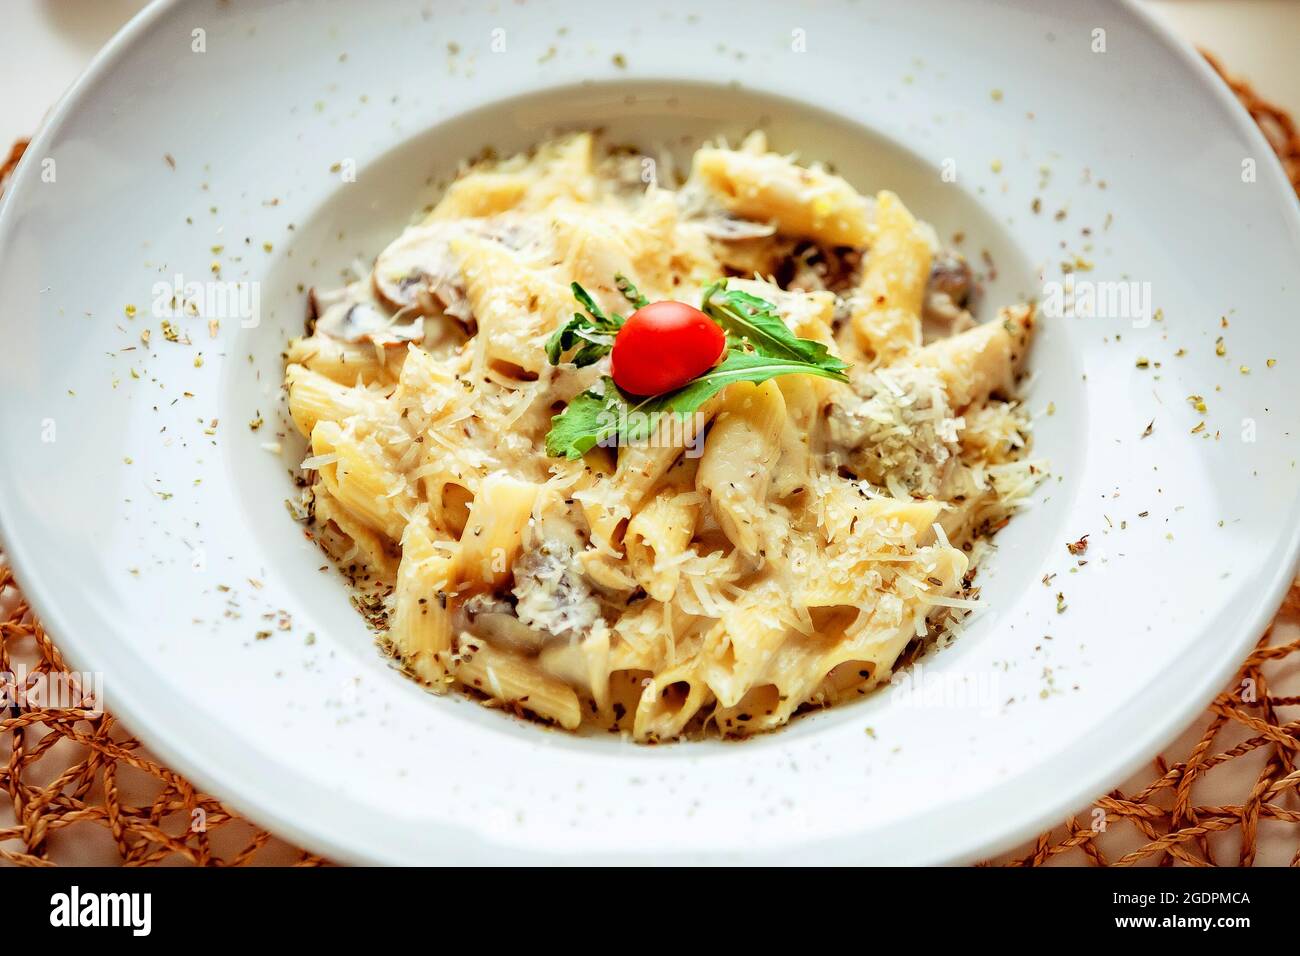 Pasta mit Pilzen in einer weißen Sauce, garniert mit einer Scheibe Kirschtomate und einem Blatt Kräuter Stockfoto